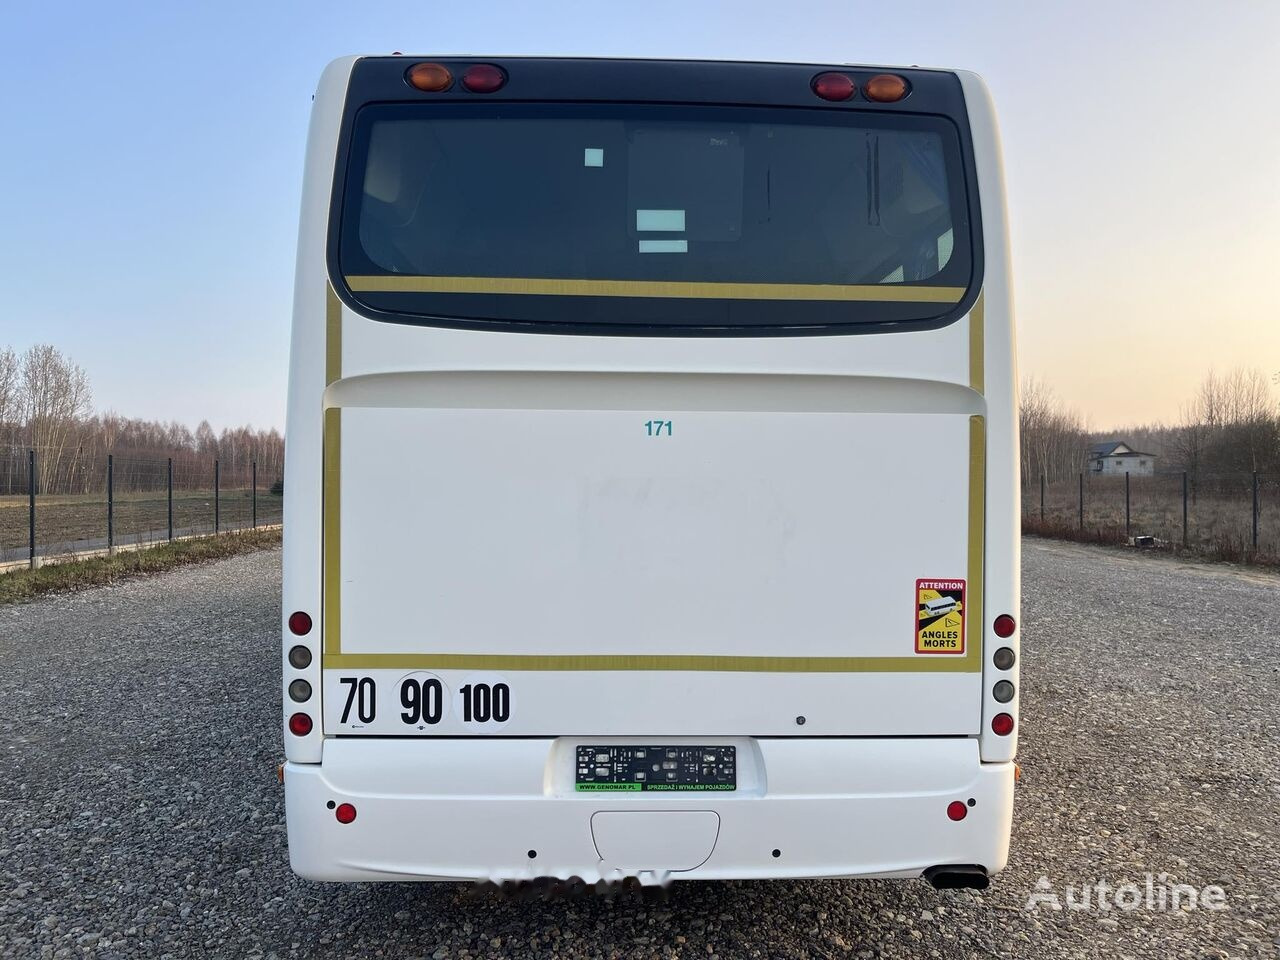 Turistinis autobusas Irisbus Crossway/Klimatyzacja/Manual/60+29 miejsc/Euro 5: foto 5